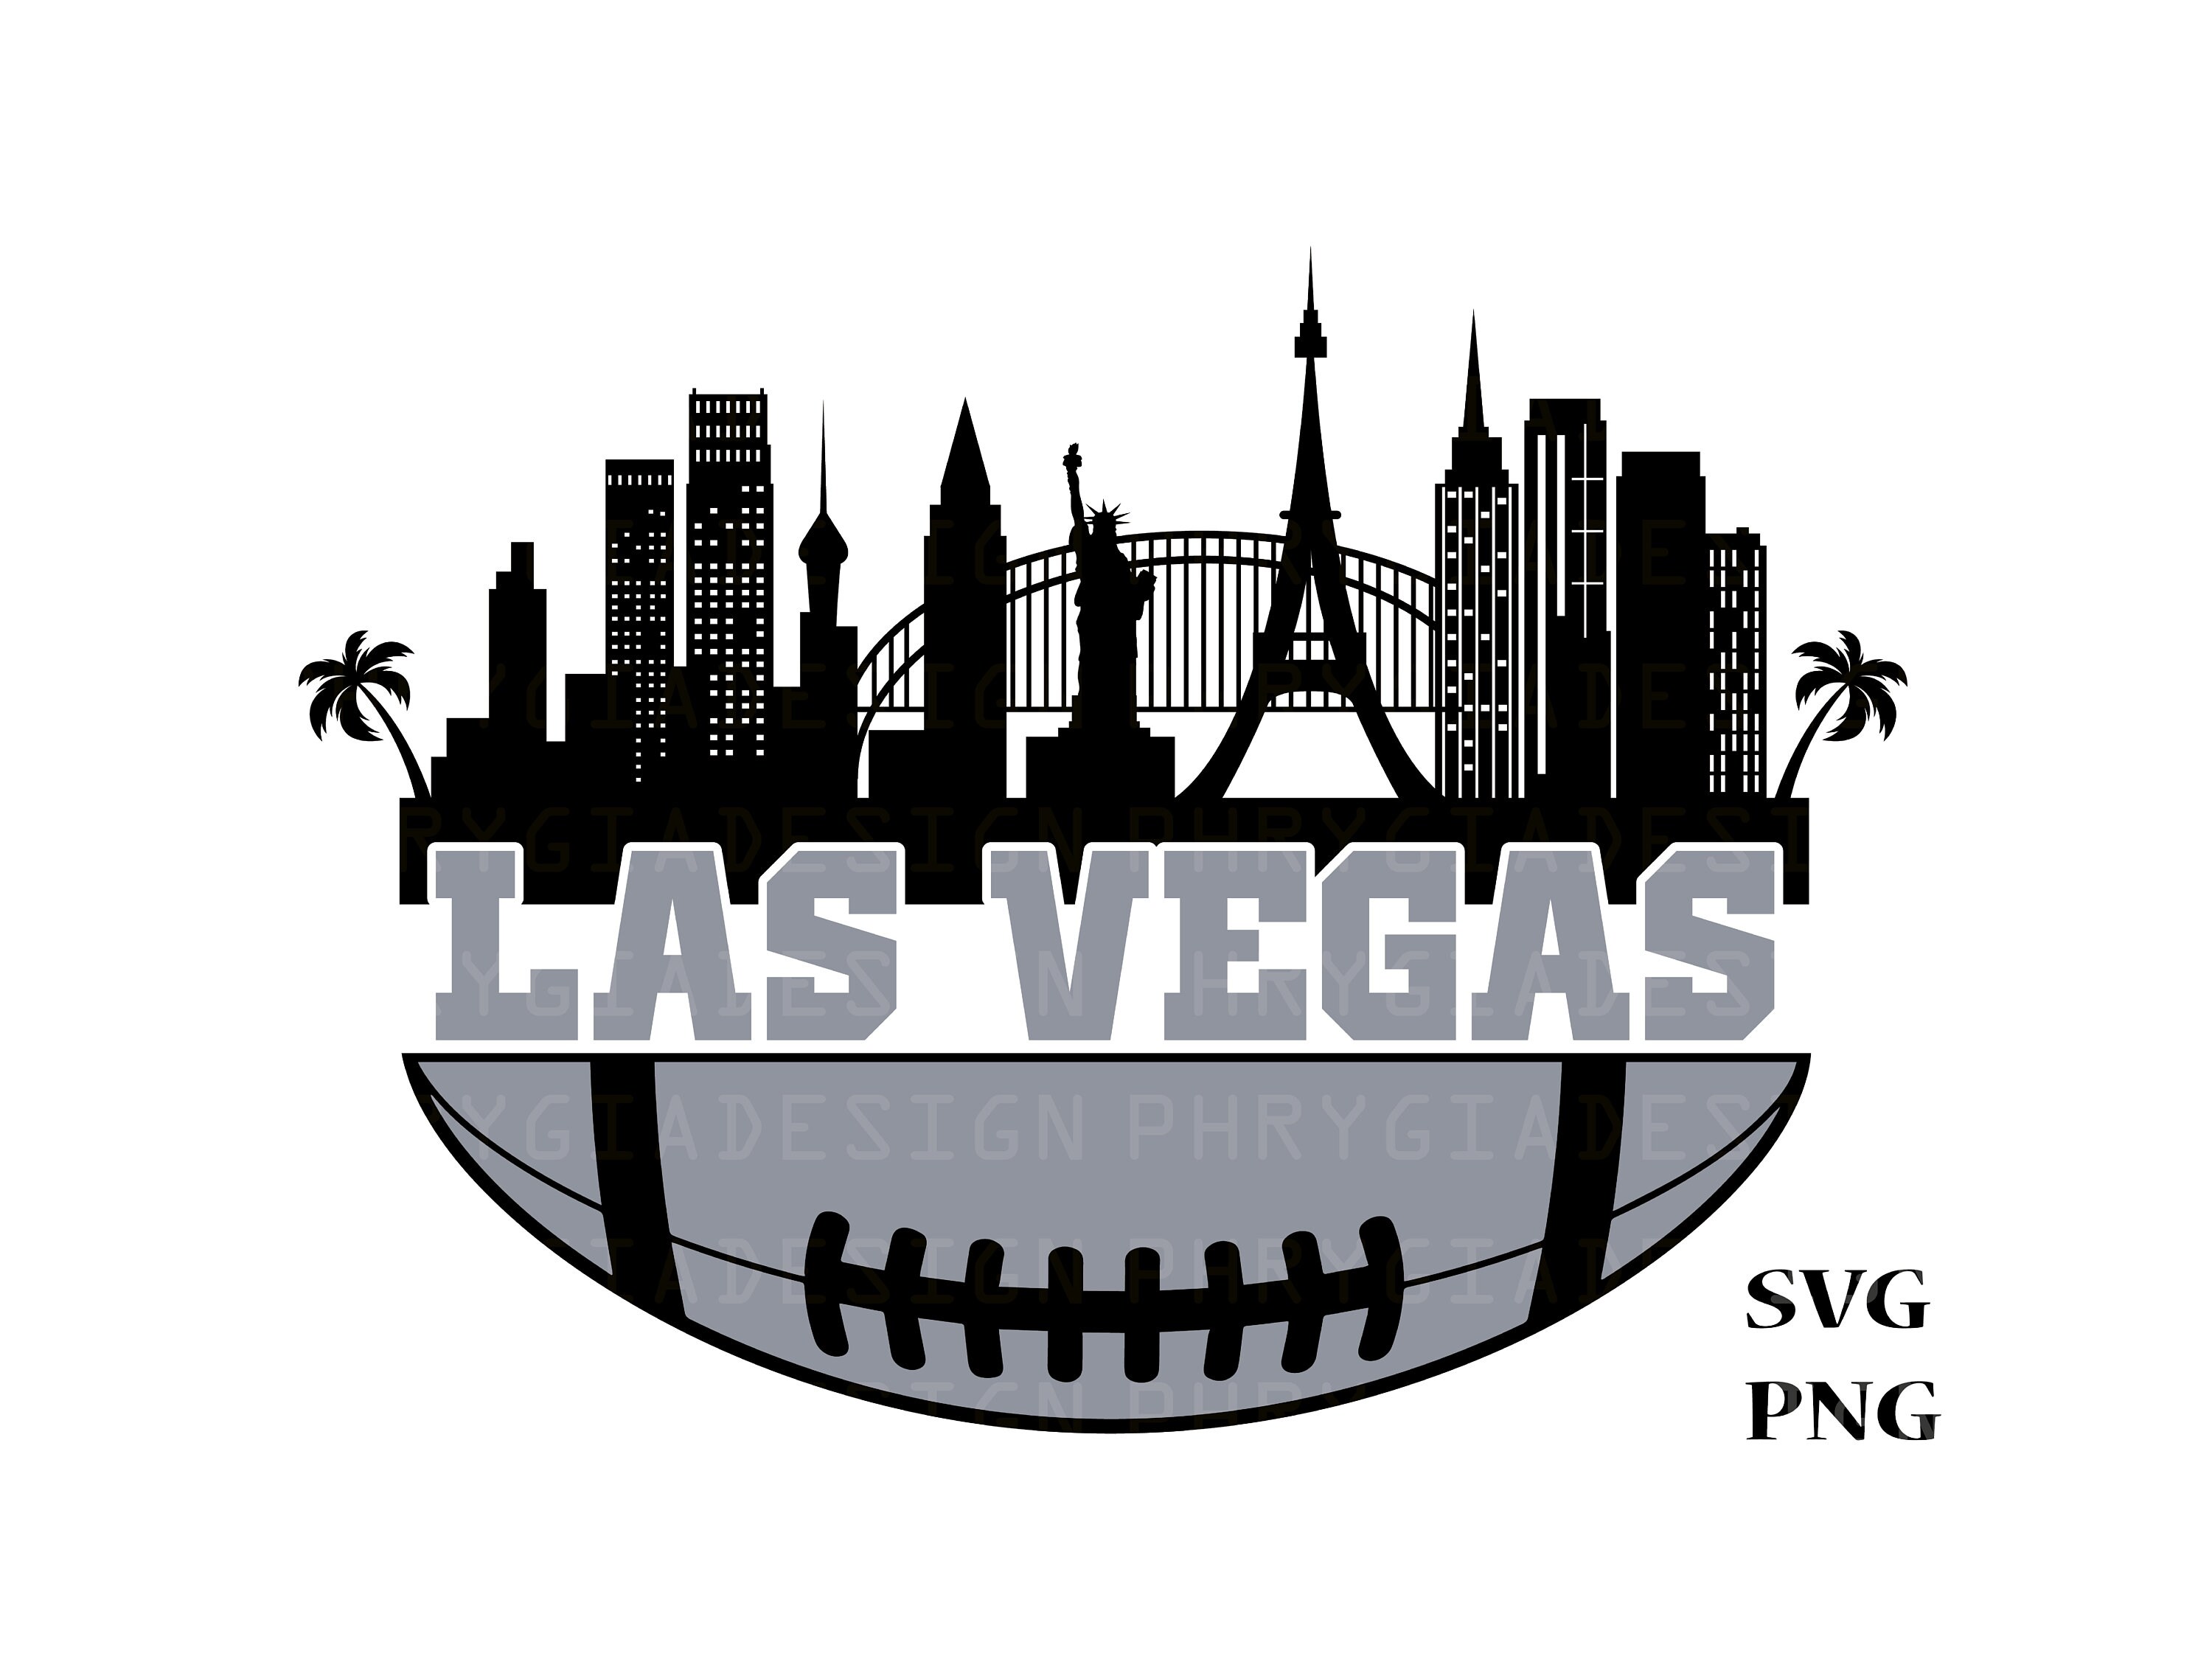 Las Vegas Raiders SVG Cut File Bundle - Gravectory